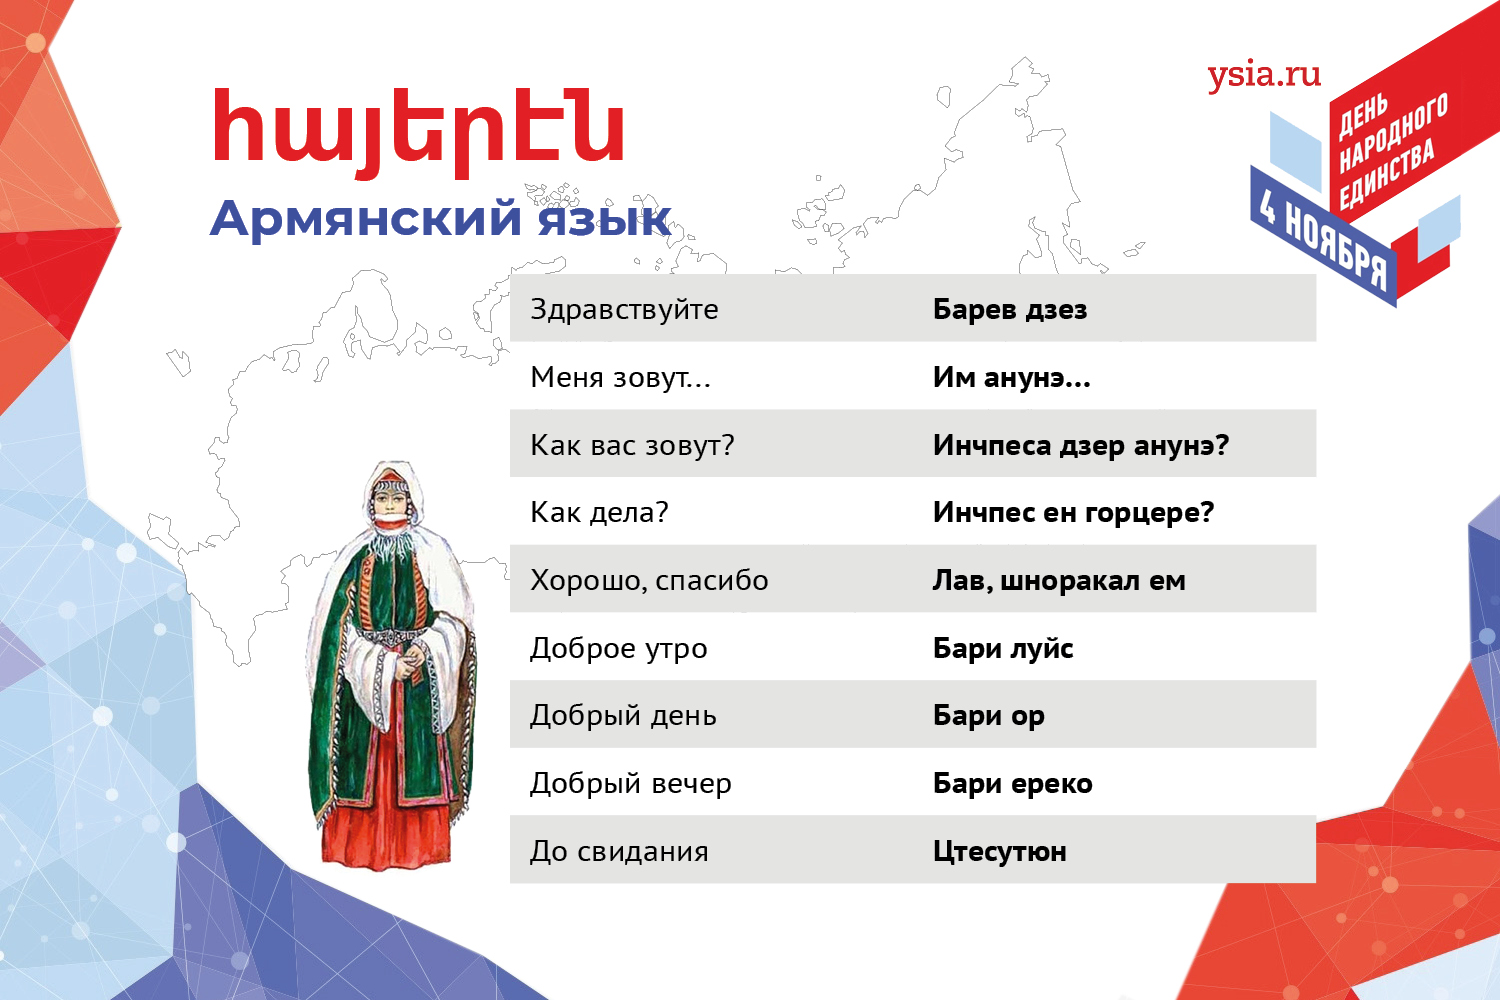 перевод с армянского по фото